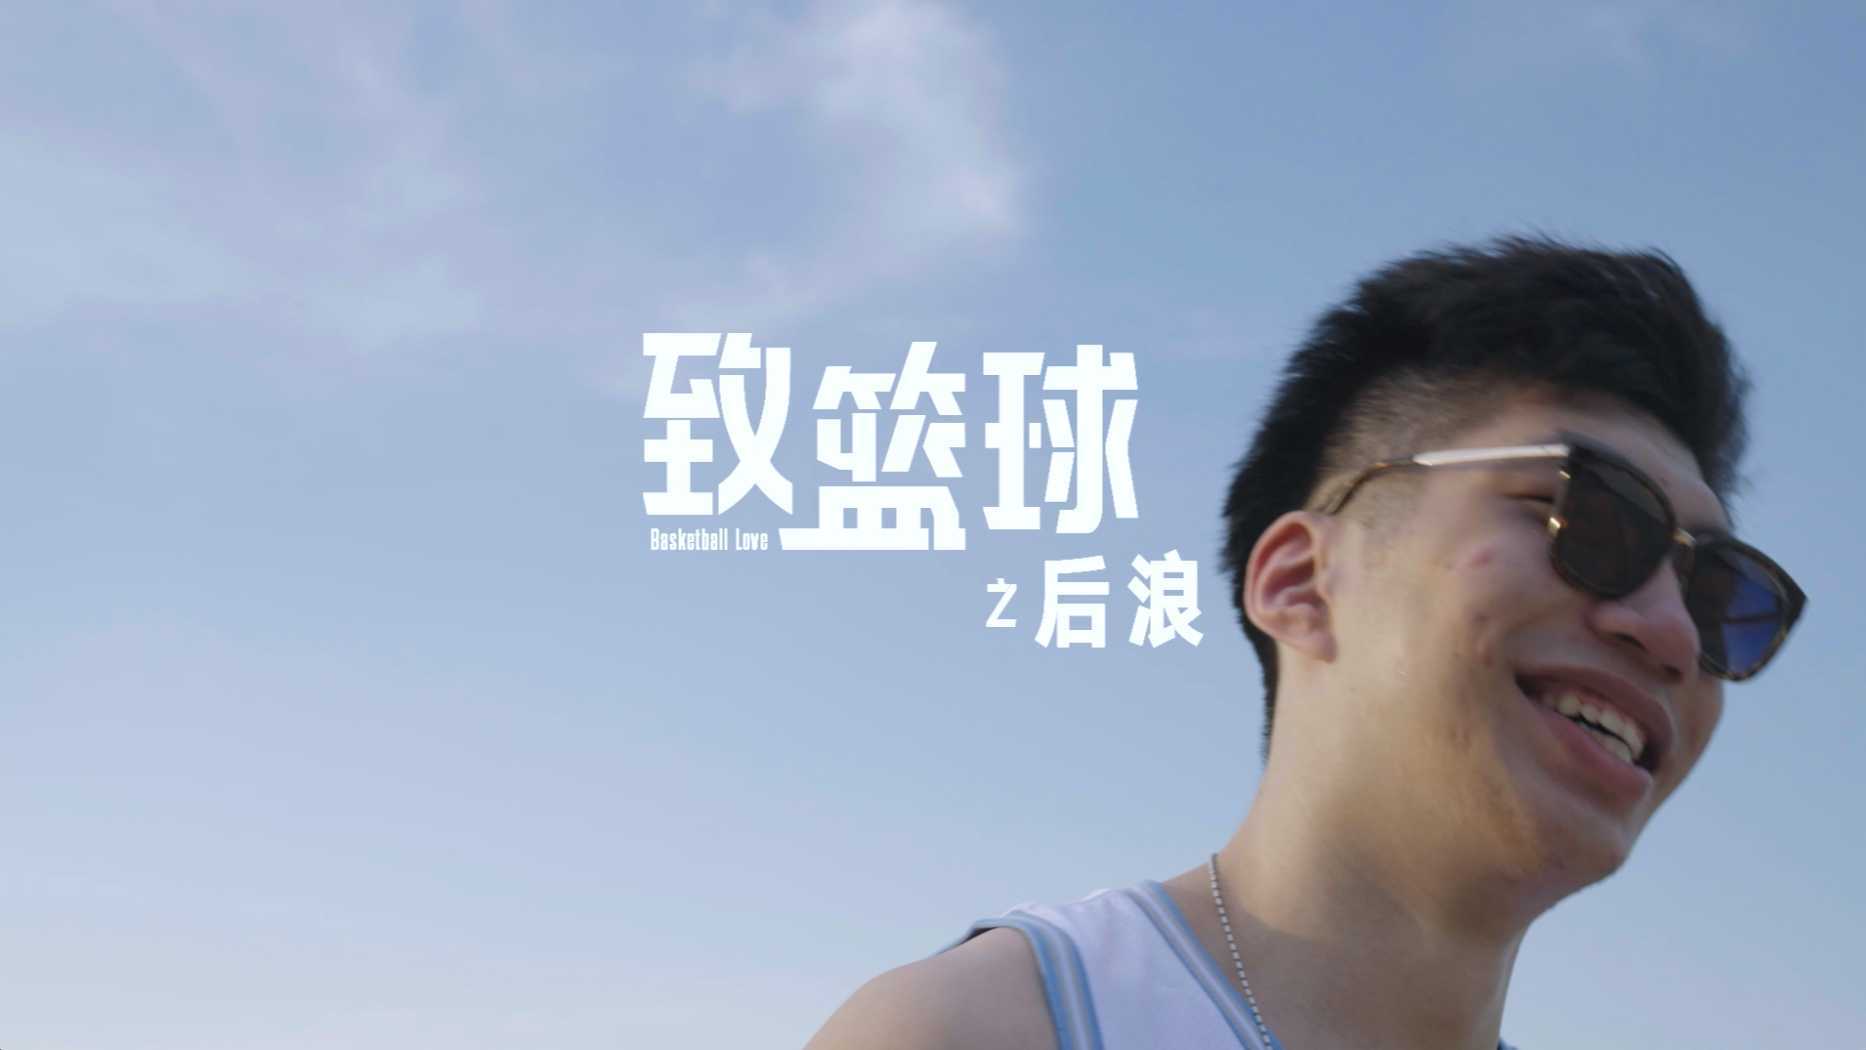 NBA中国 -《致篮球:后浪》